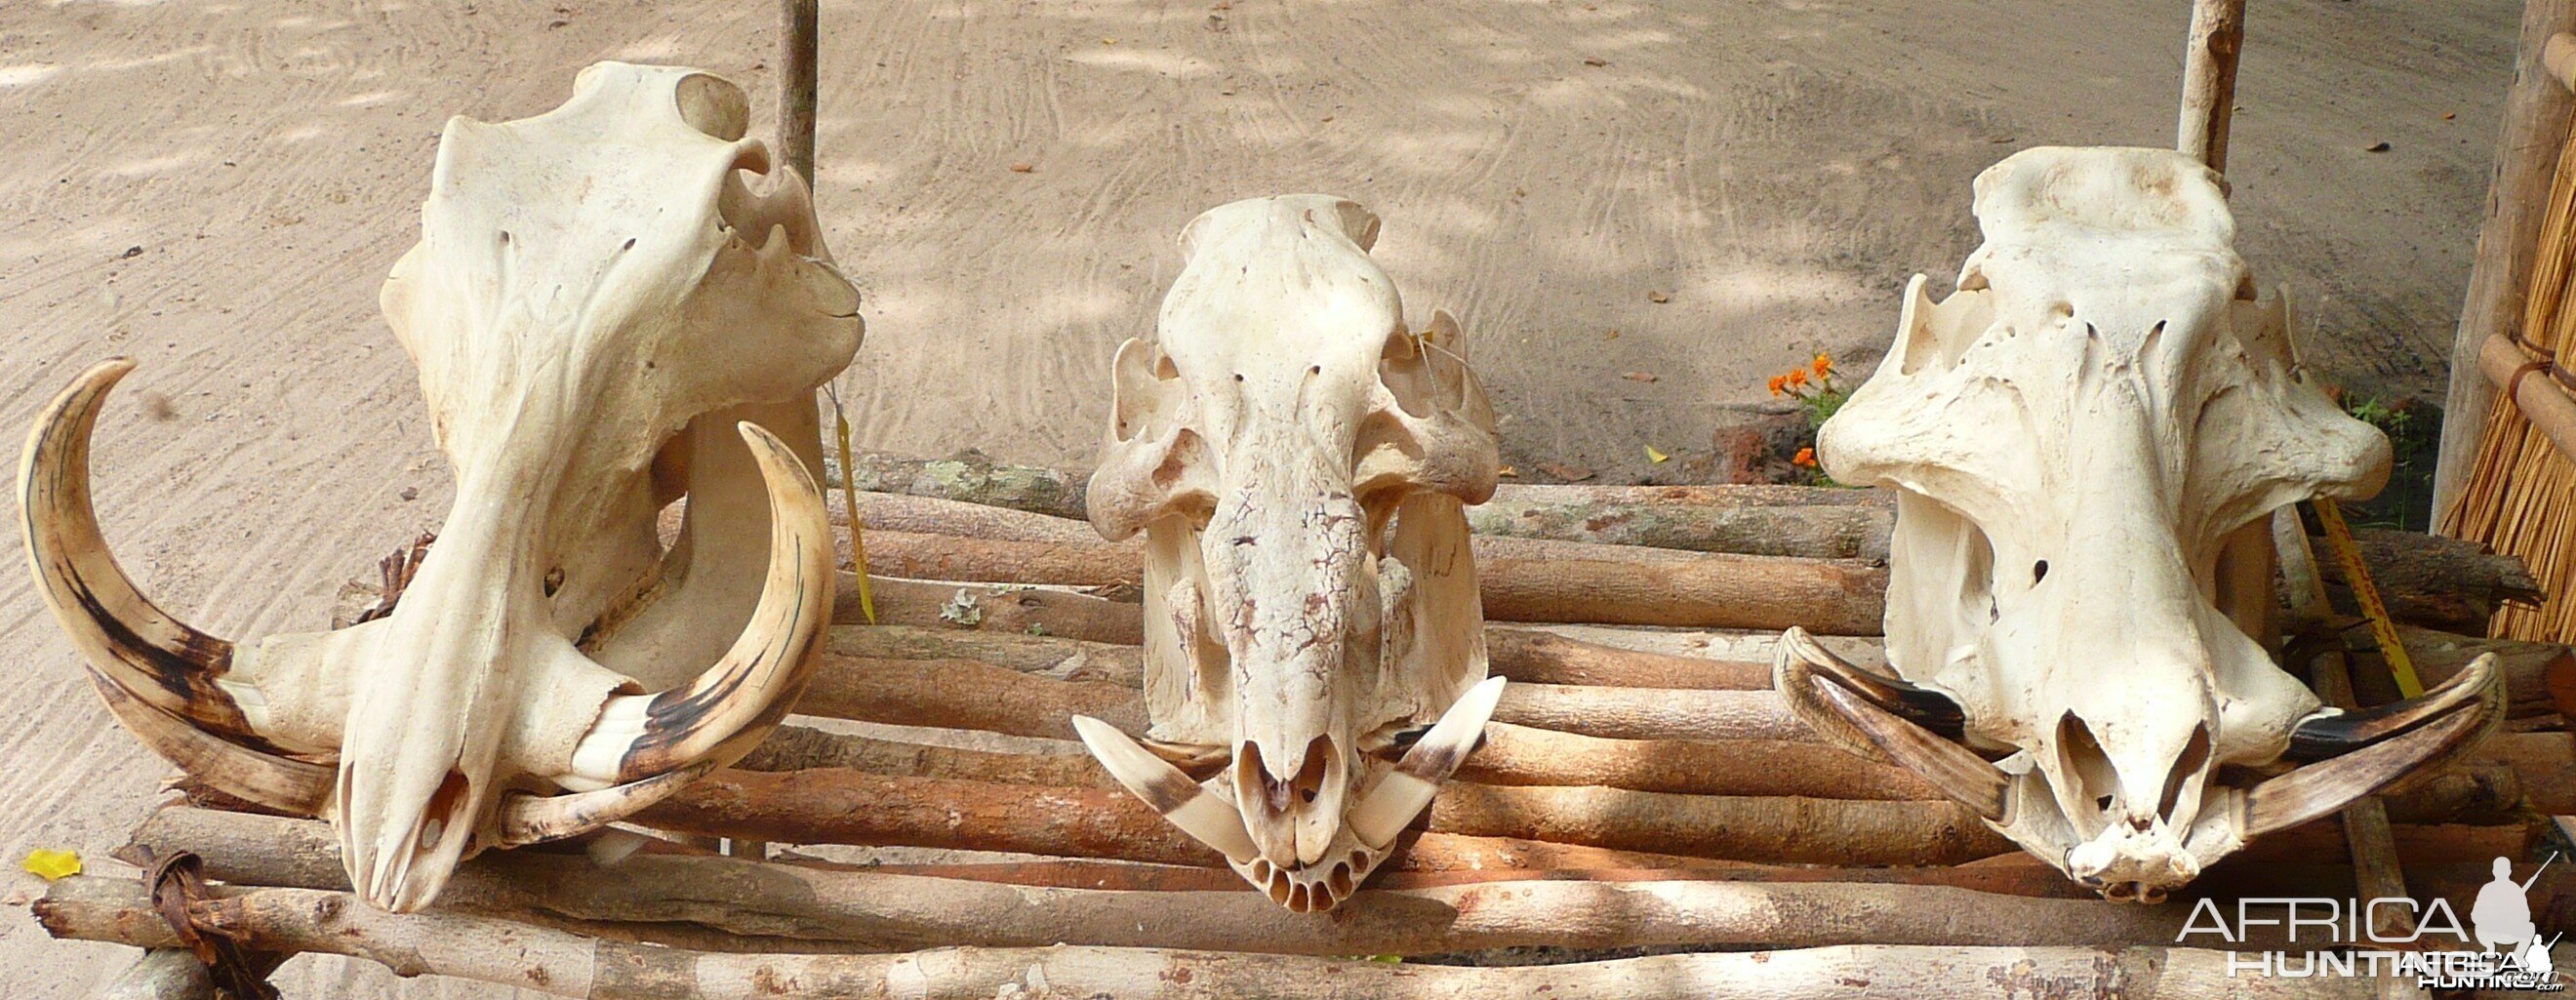 Skulls of Warthog, Red river hog and Giant forest hog